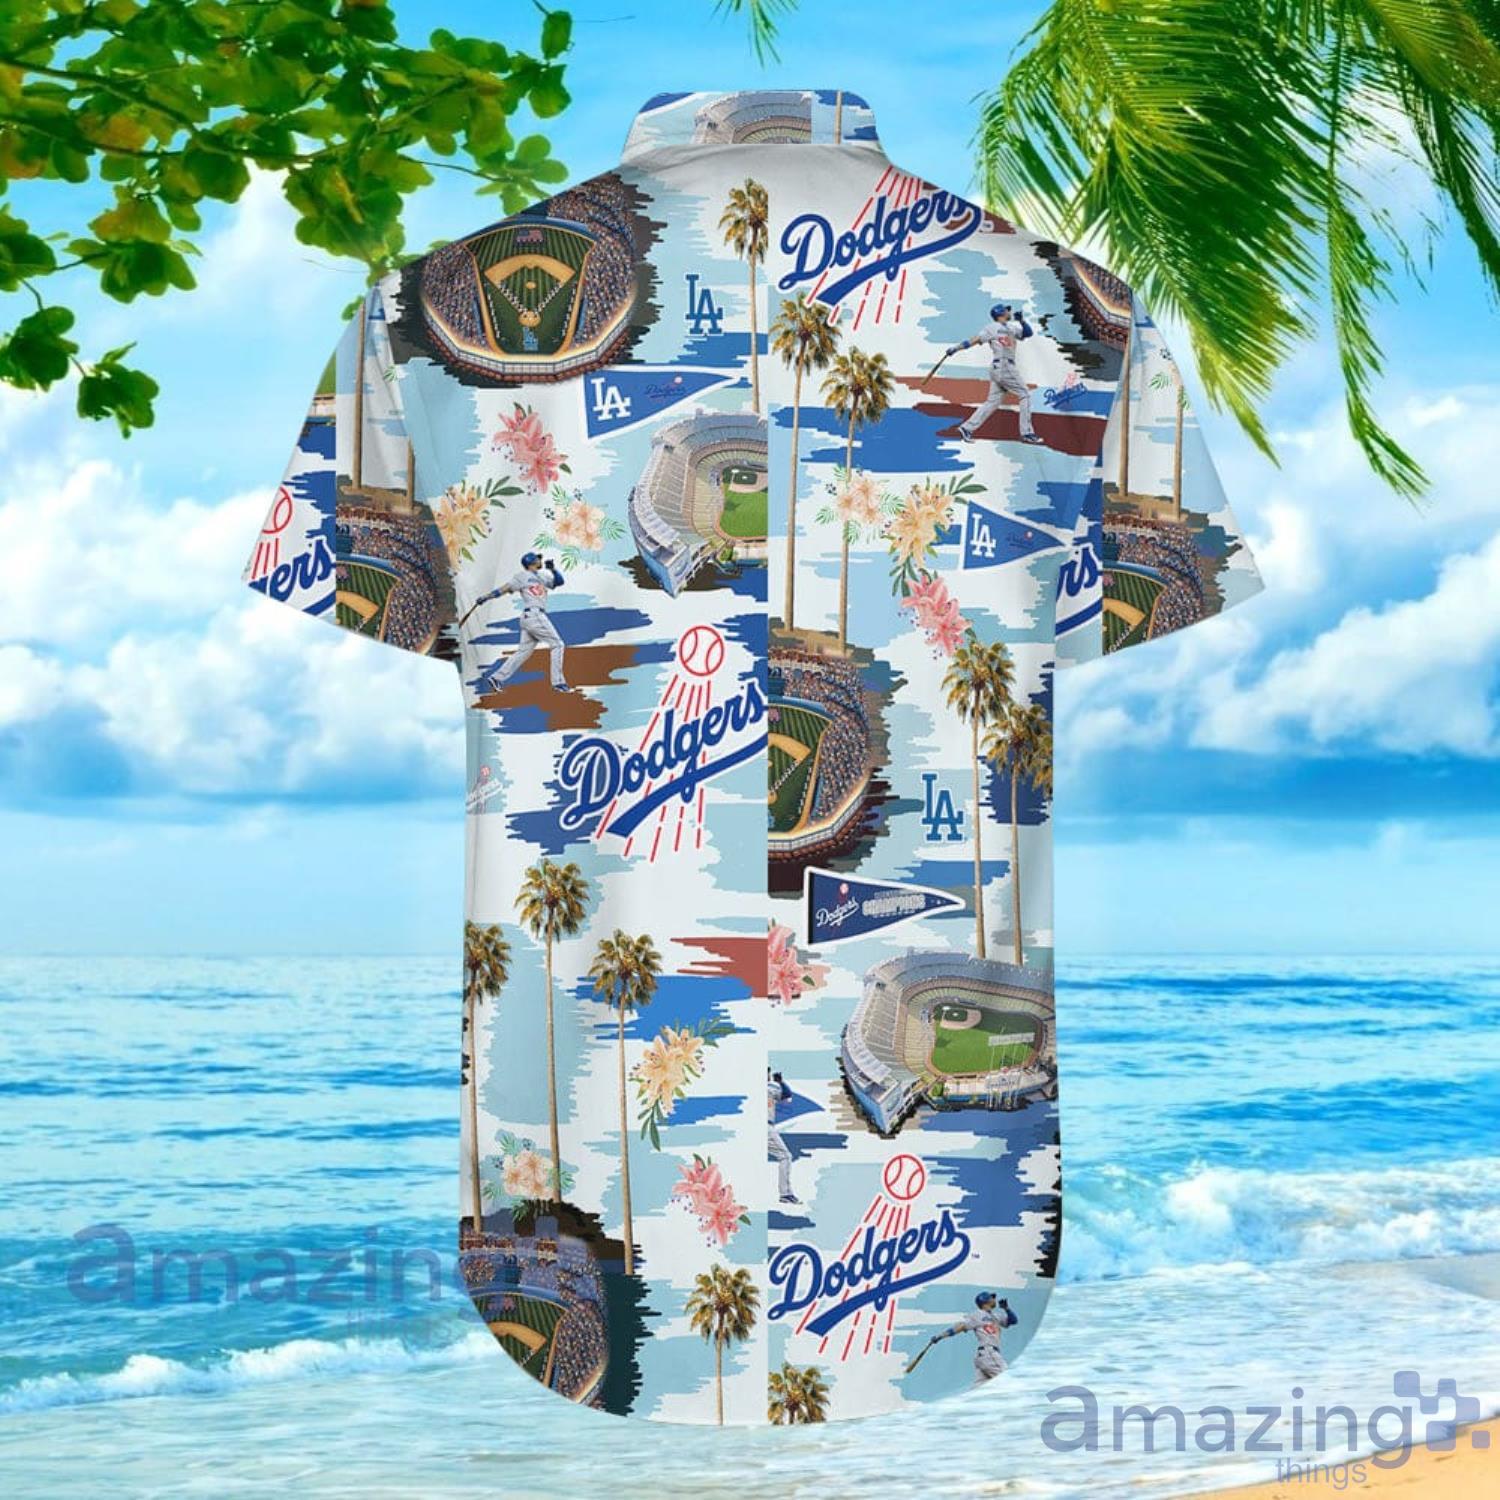 Dodgers Hawaiian Shirt LA Dodgers Blue Trees Hawaiian Shirt